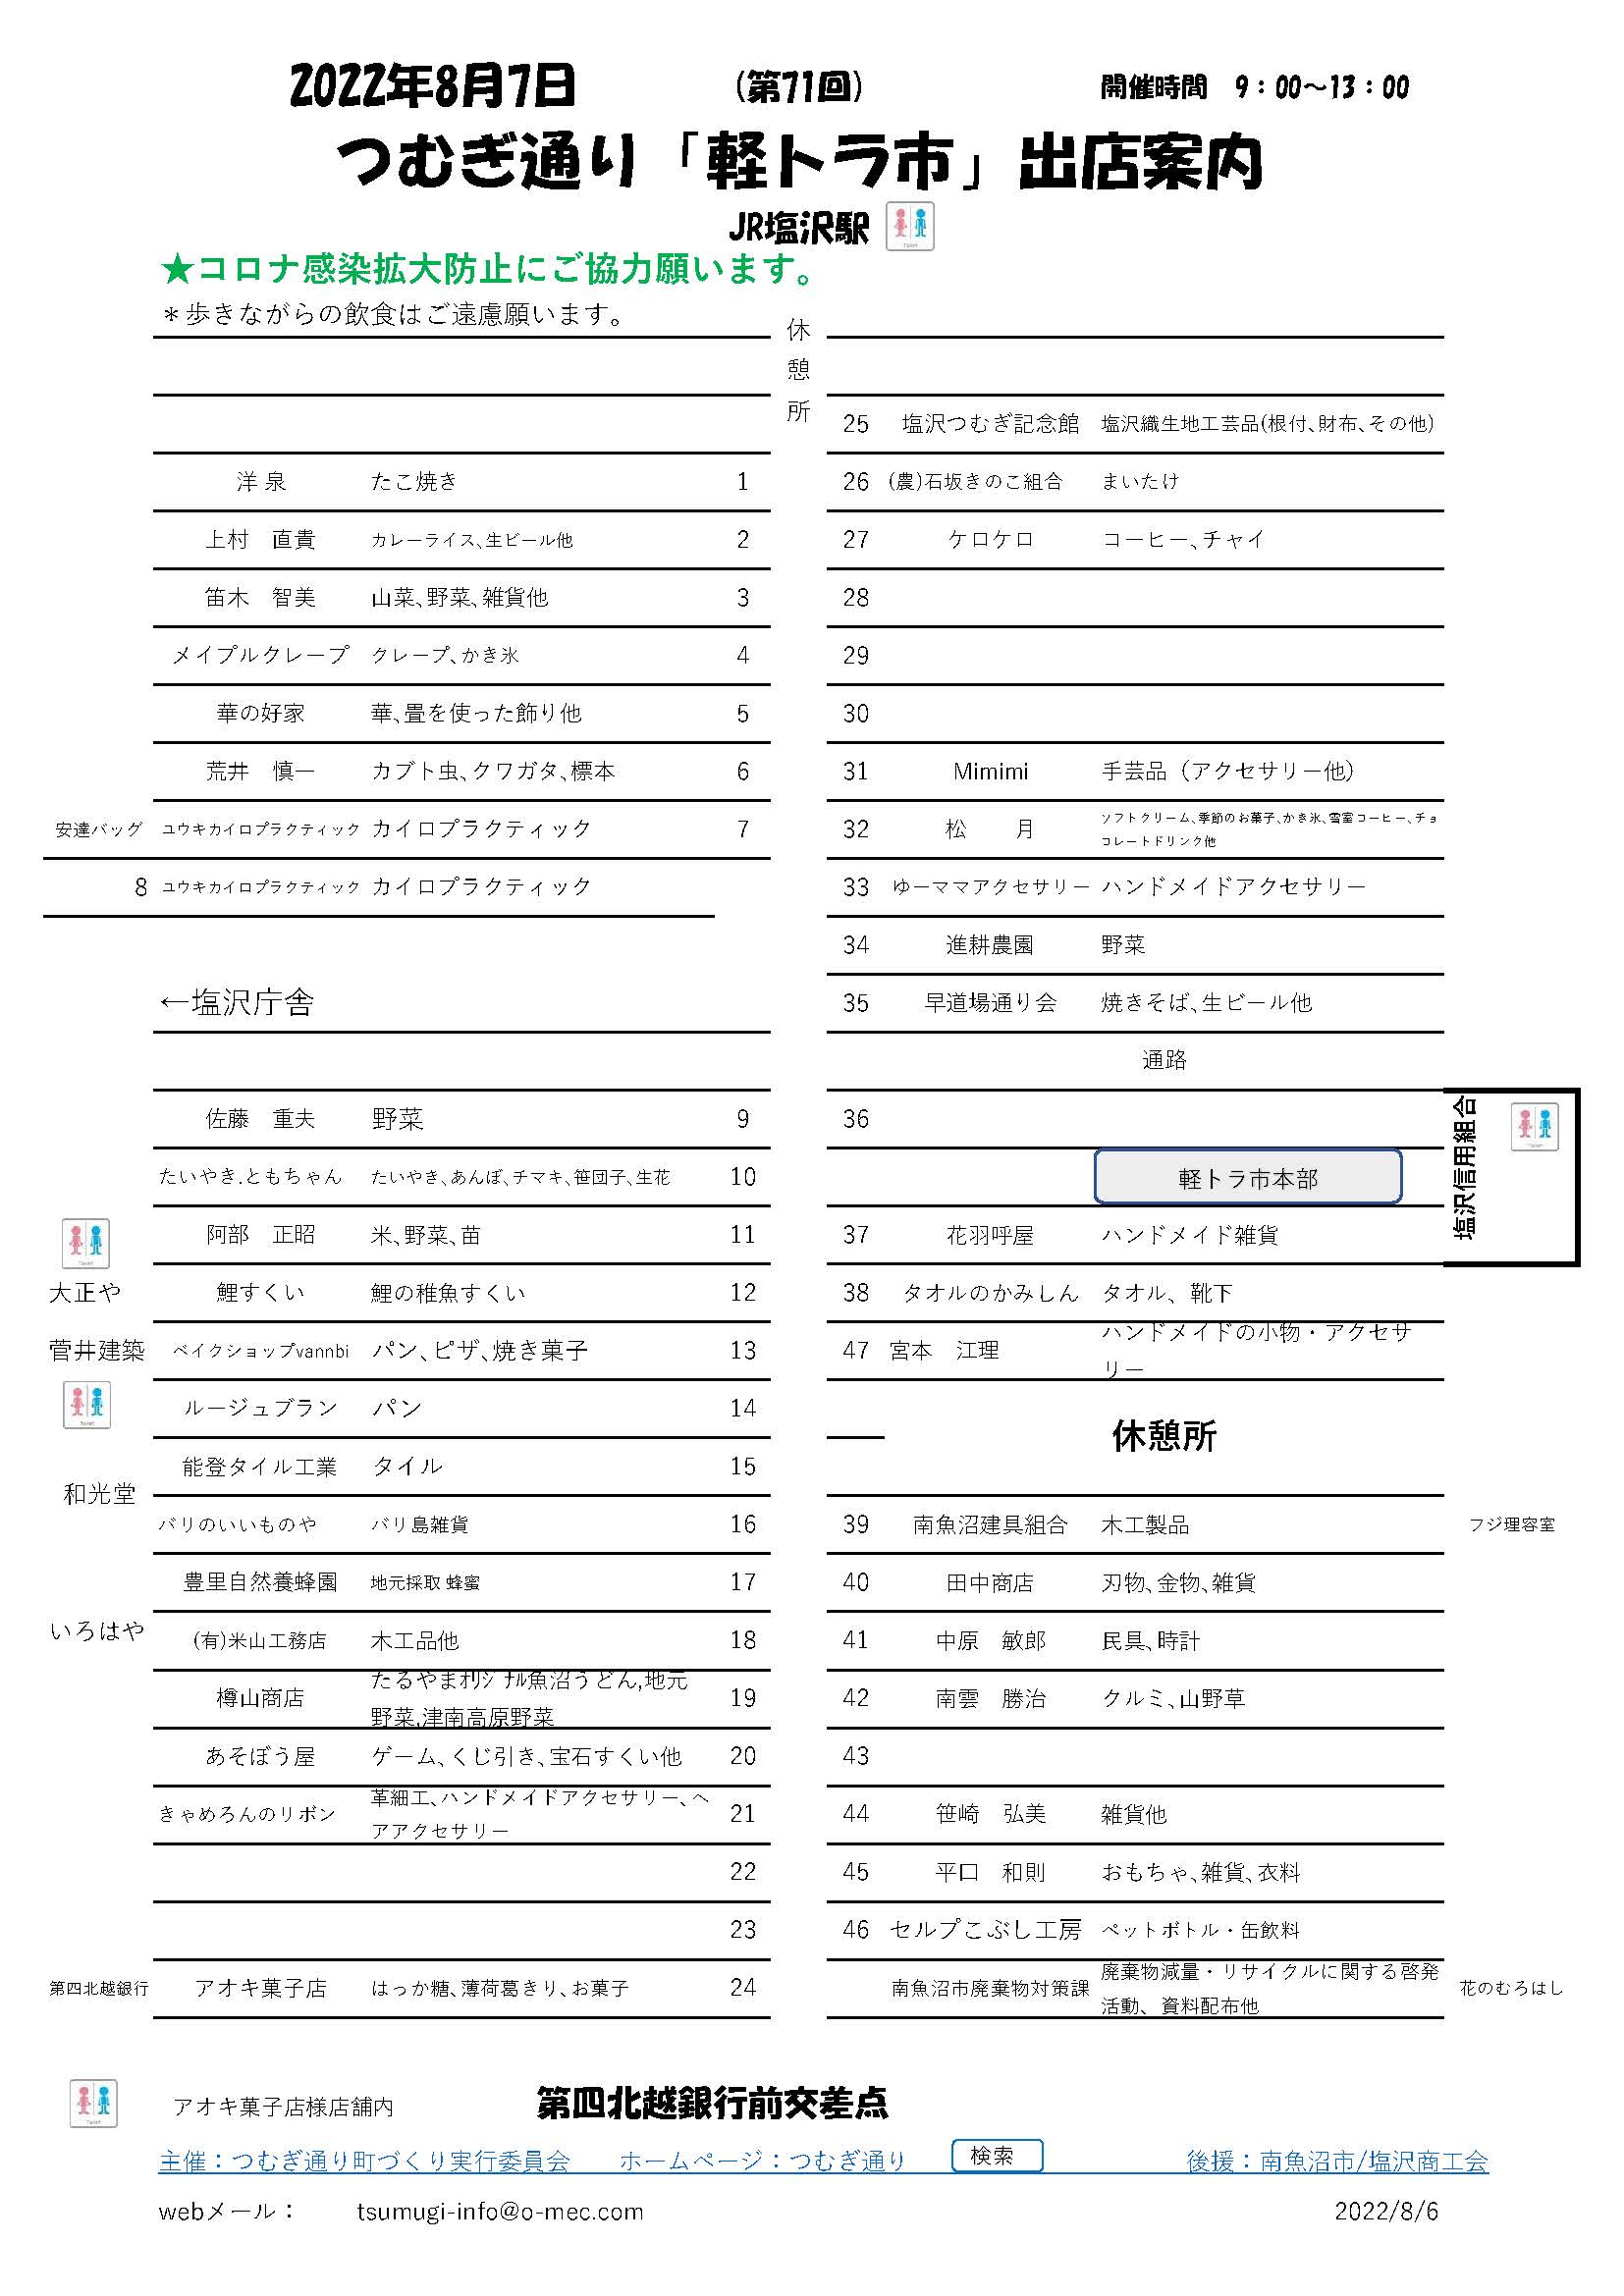 軽トラ市出店者配置図(2022年8月）_20220806